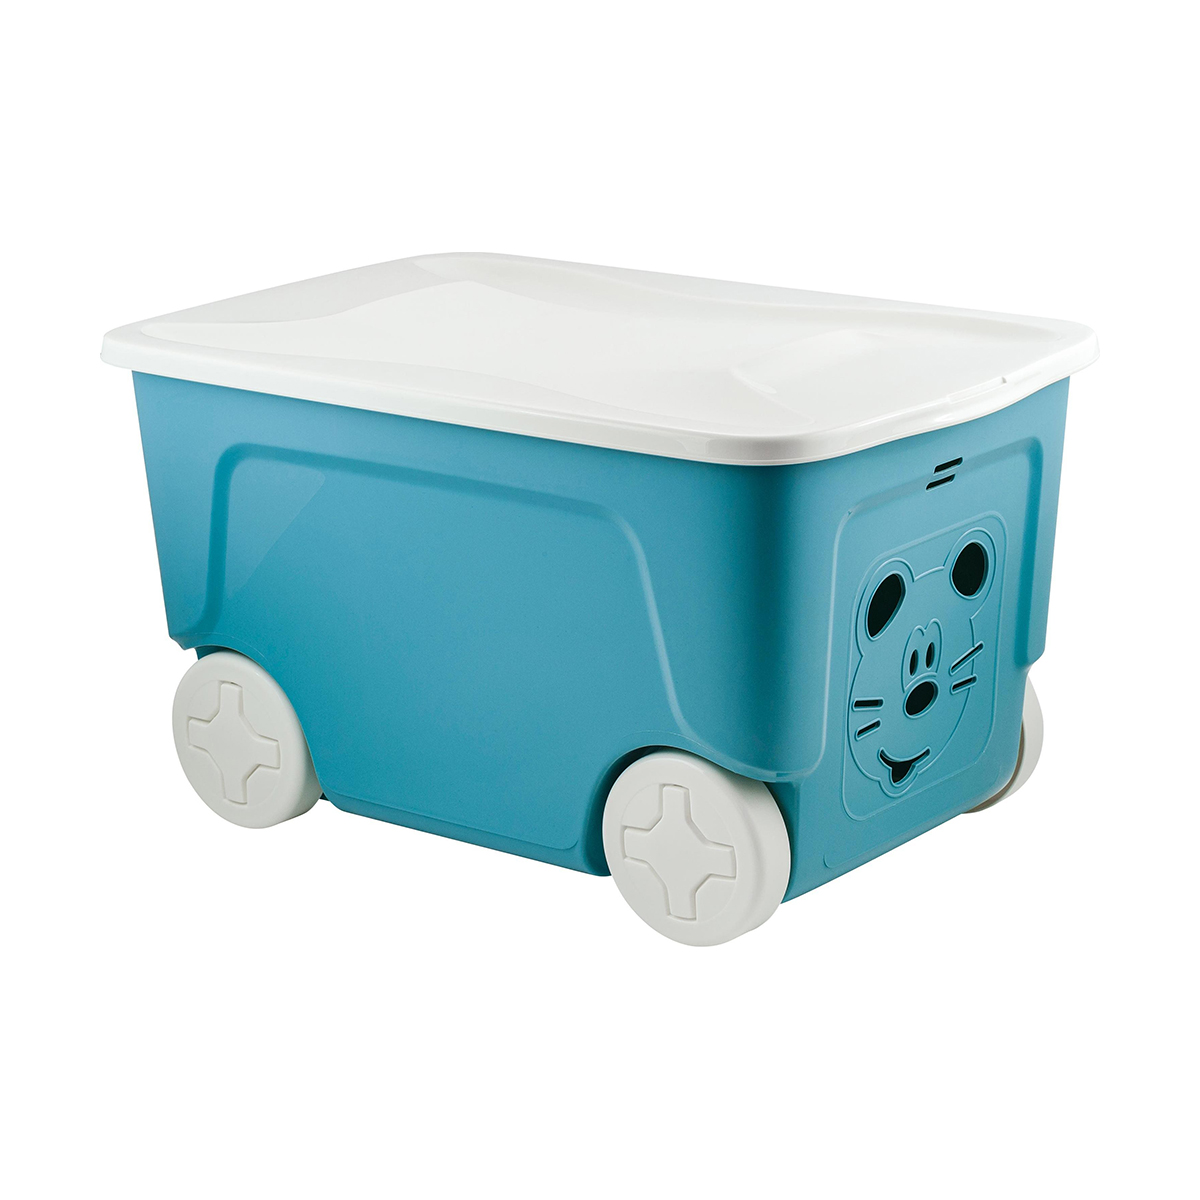 Ящик для игрушек на колесах Lalababy Play with Me, 59 x 38,3 x 33 см, 50 л, синий колокол rifforma вешалка для одежды напольная на колесах